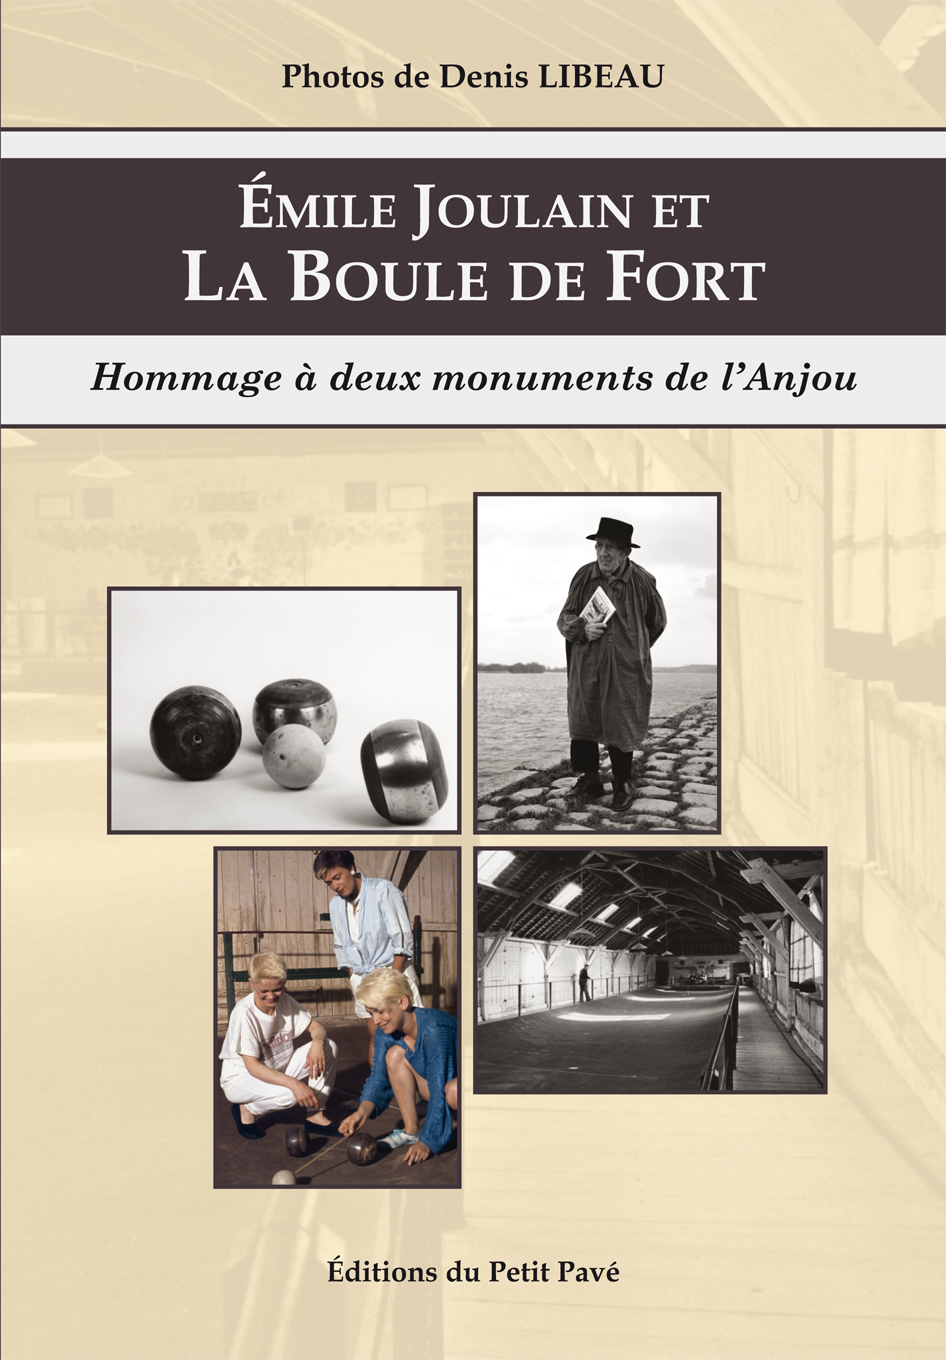 Émile Joulain et La Boule de Fort - Photo emile_joulain_et_la_boule_de_fort-de-denis_libeau-et-emile_joulain.jpg